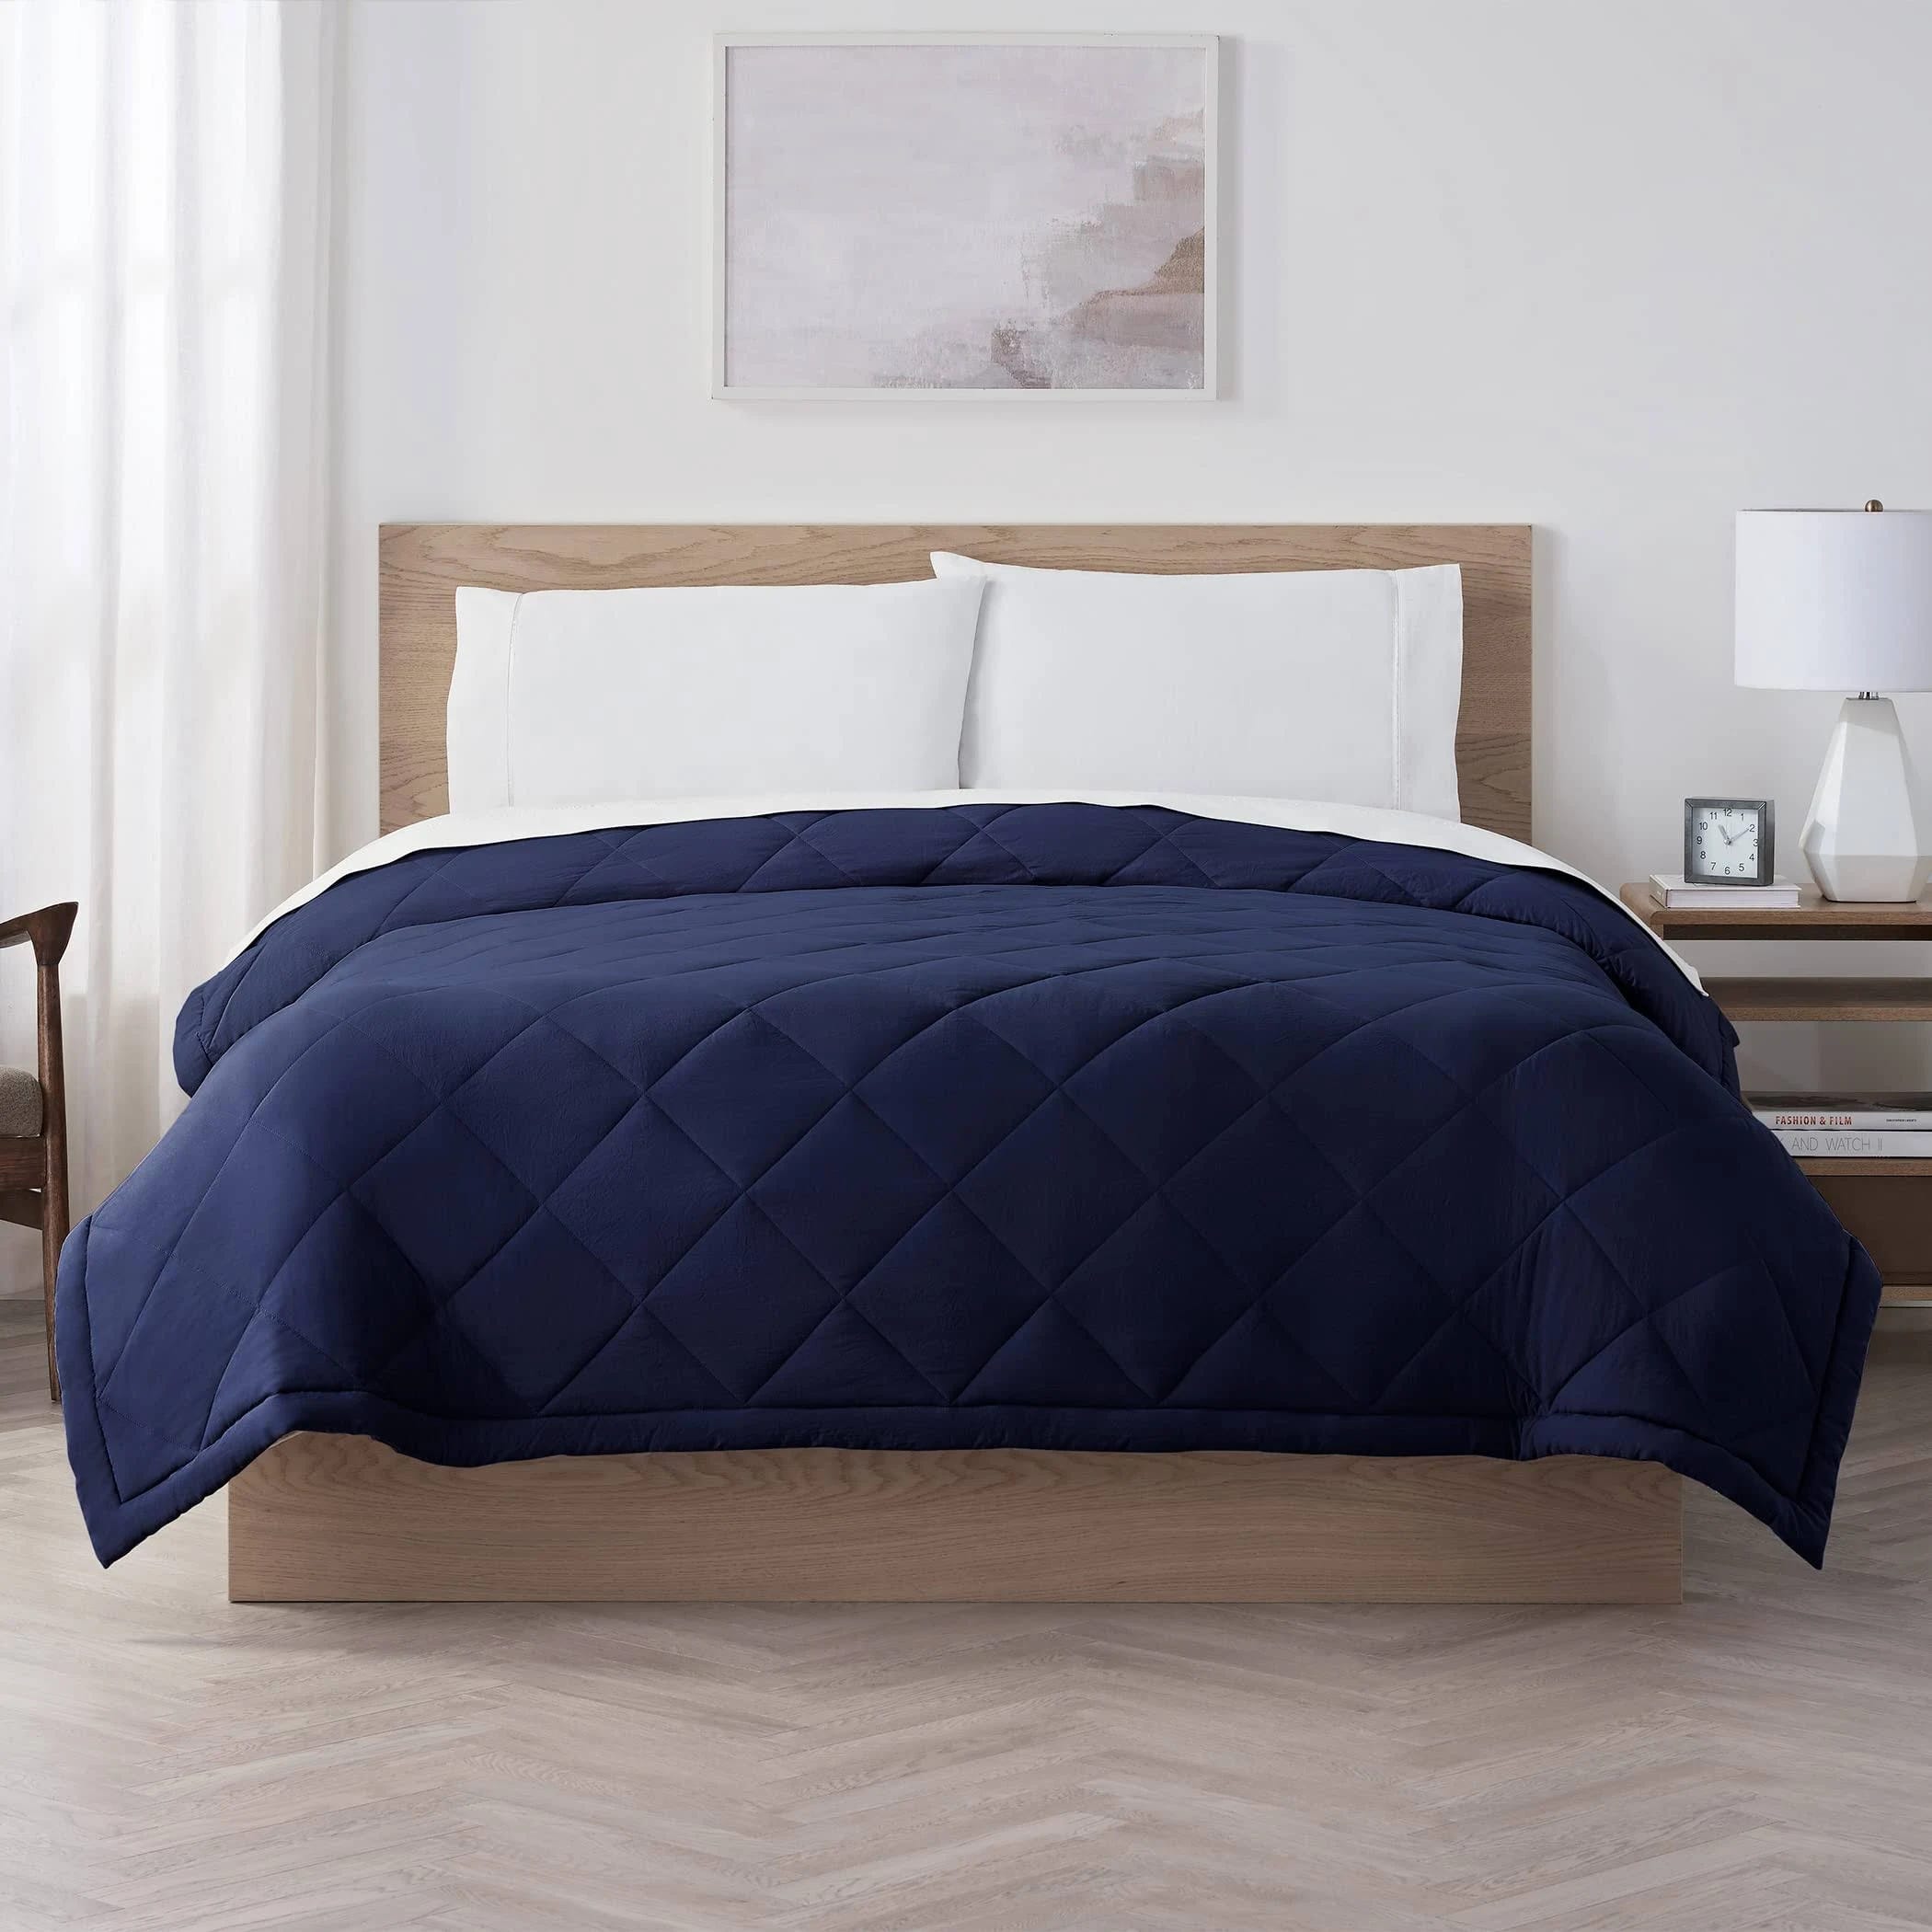 Pre-Washed, Cooling King Size Sleep Blanket - Serta Super Soft | Image